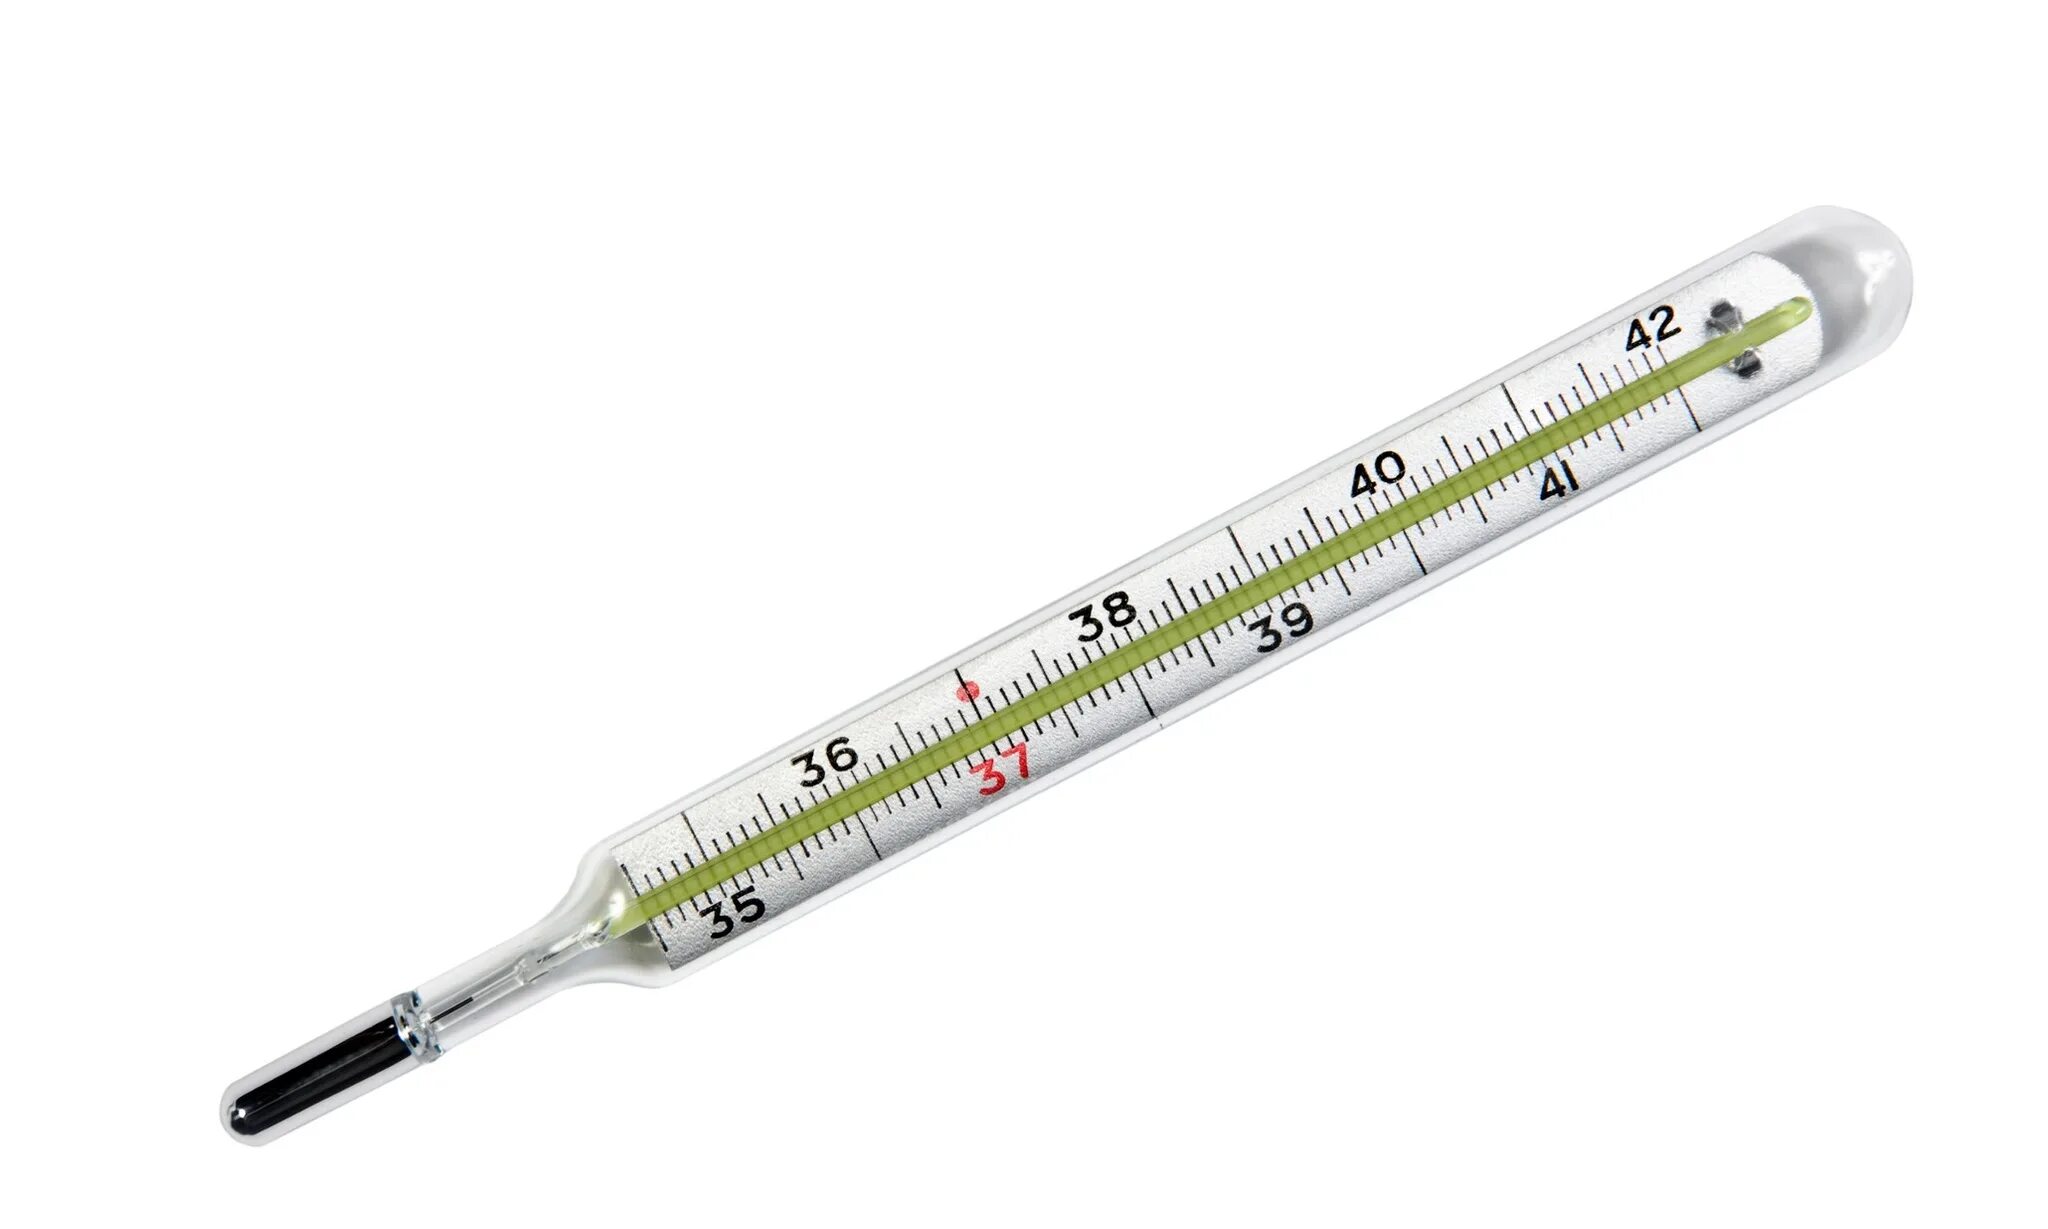 4 градусника. Термометр мед.ртутный tvy-120. Термометр медицинский ртутный модель la11. Термометр медицинский ртутный Амрус tvy-120 в футляре. Ртутный термометр (armpit Clinical Thermometer).